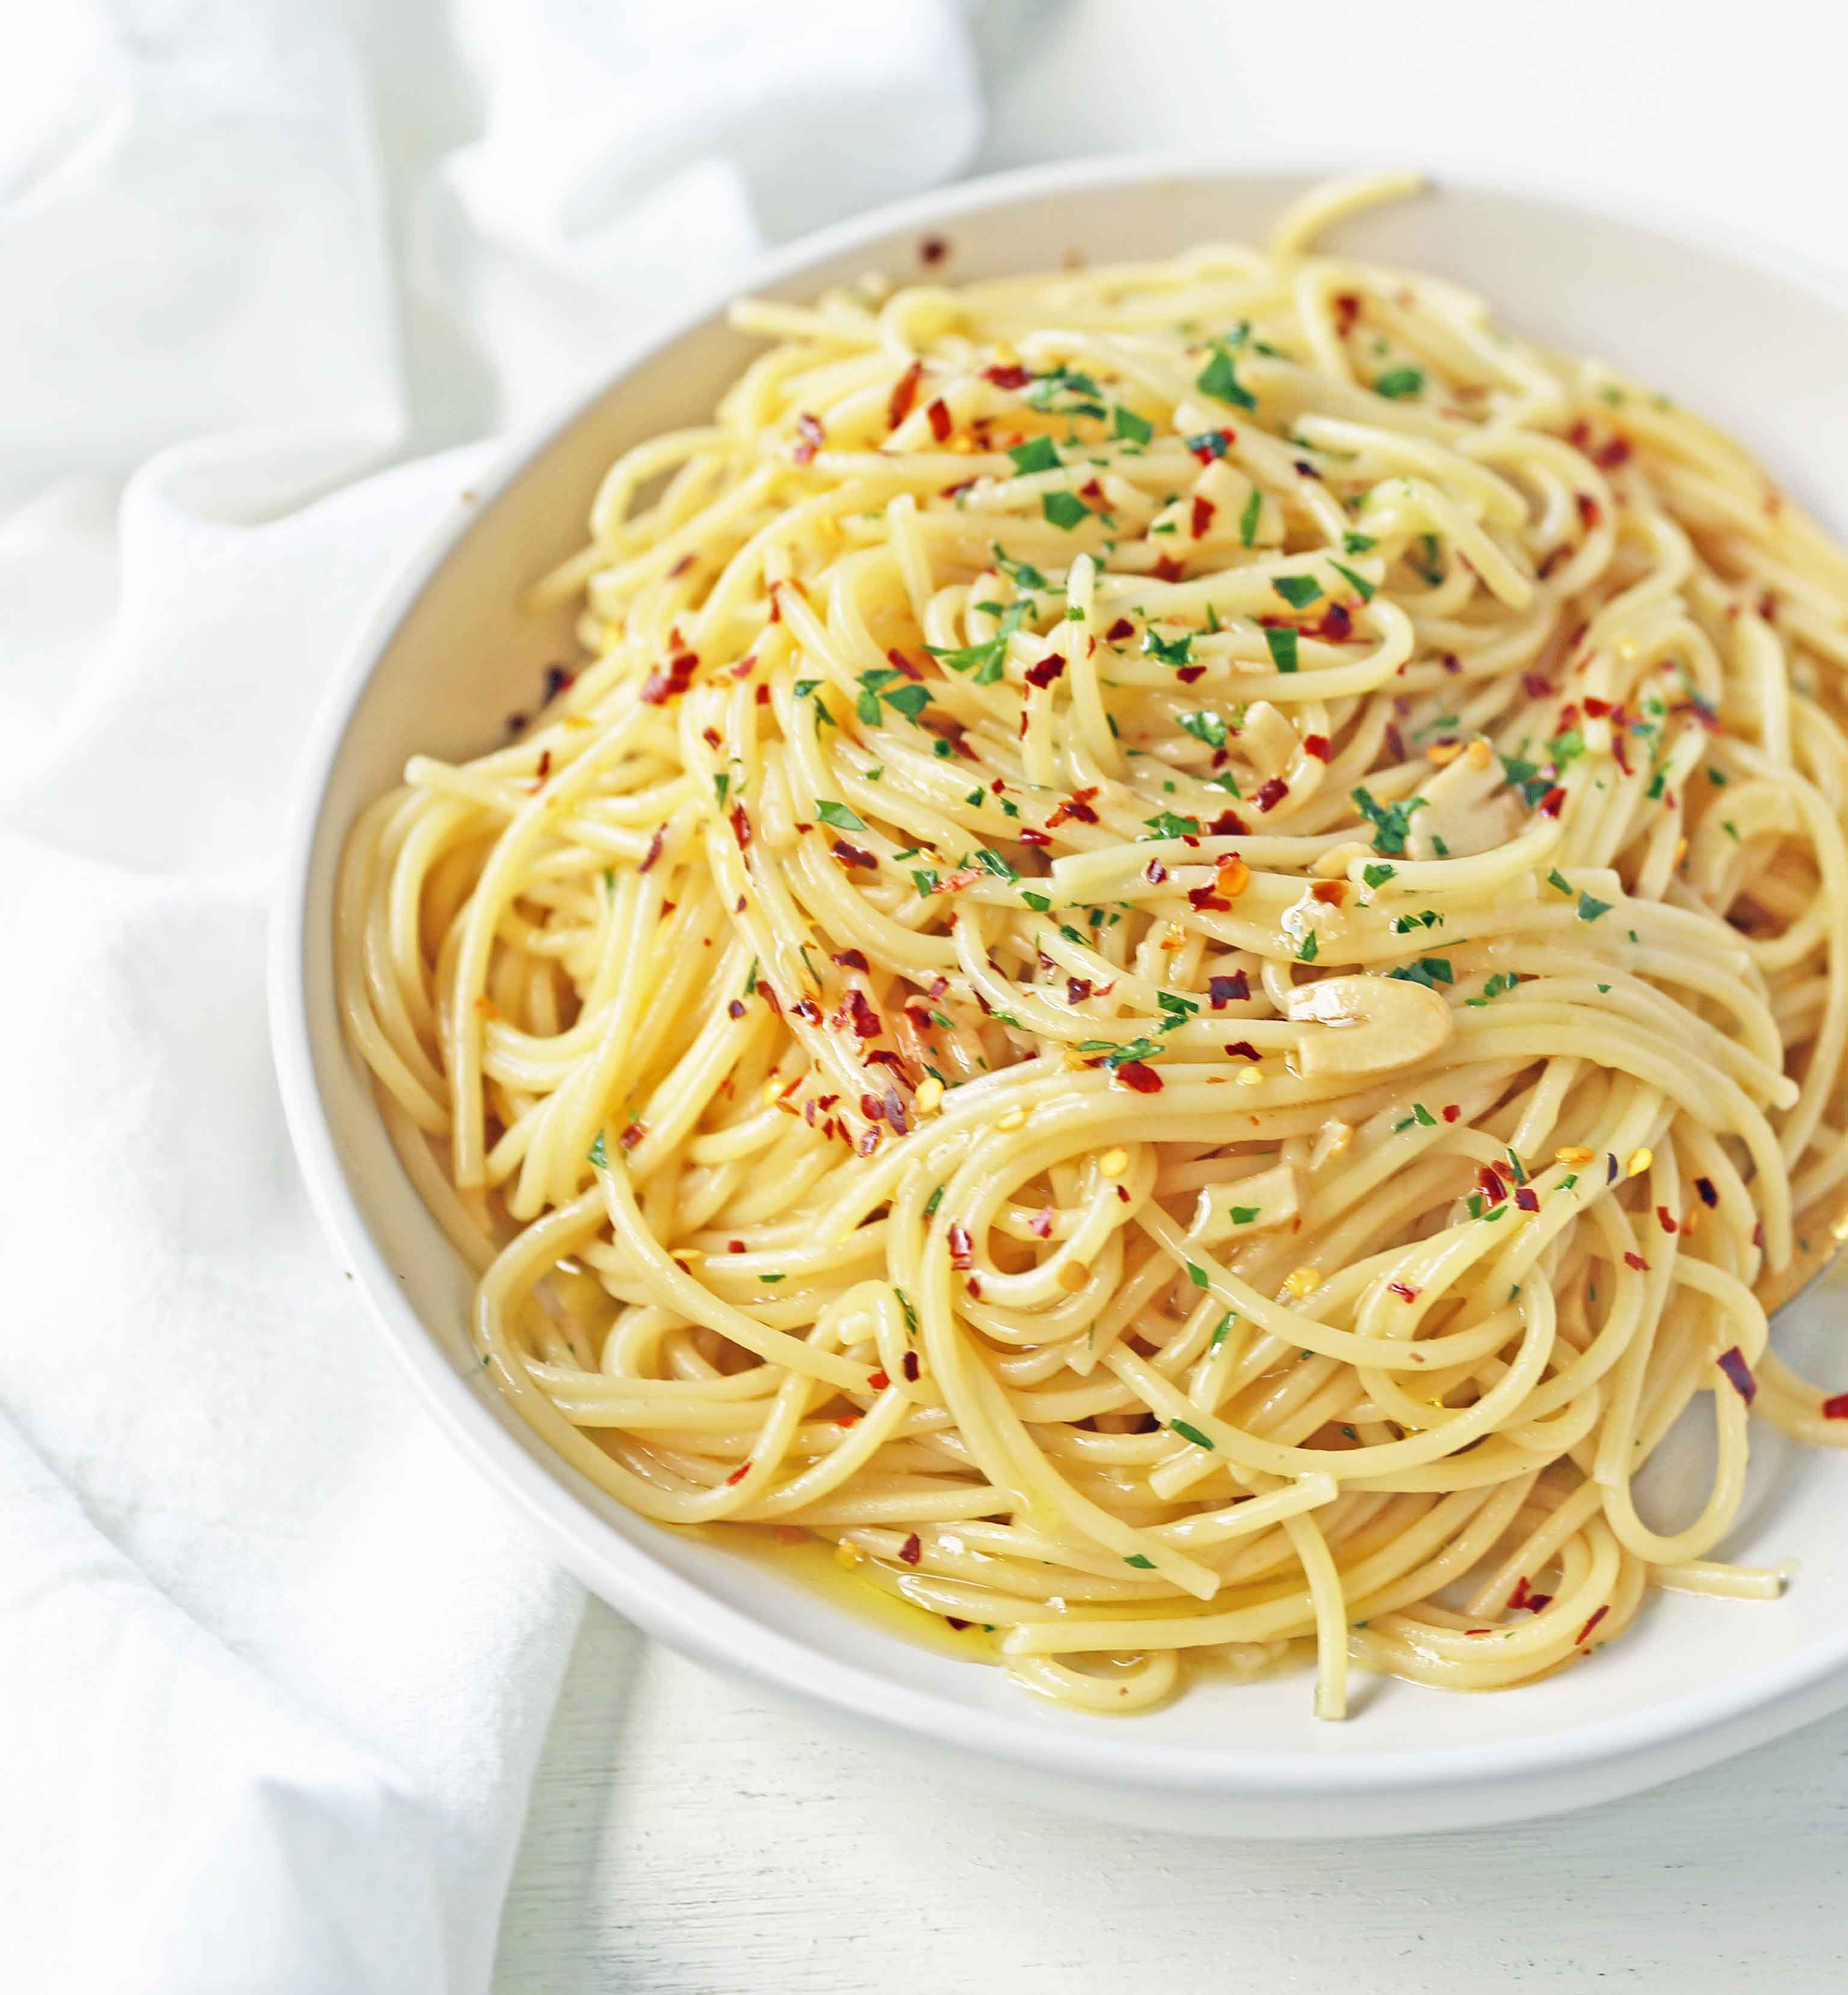 Spaghetti Aglio e Olio (Spaghetti with Garlic and Olive Oil)